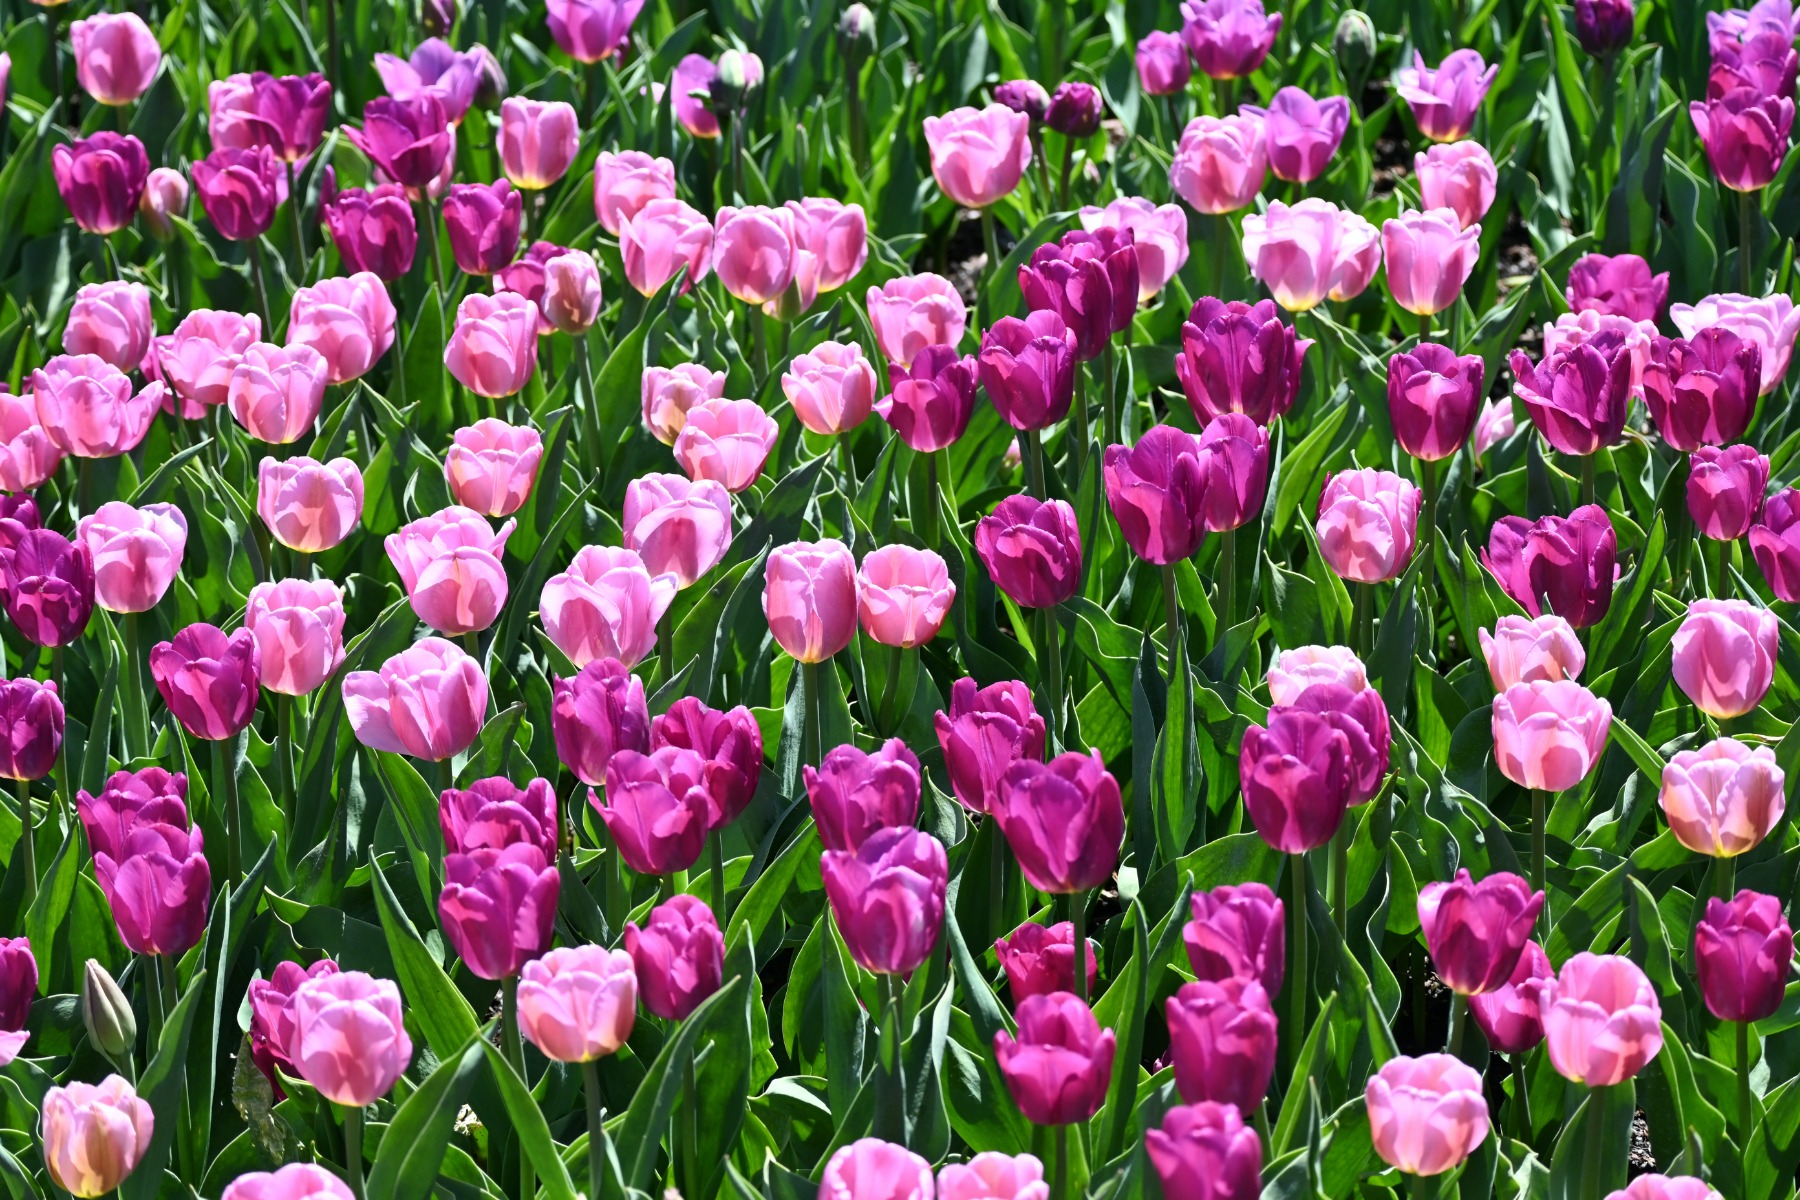 Tulipe : conseils de plantation et entretien